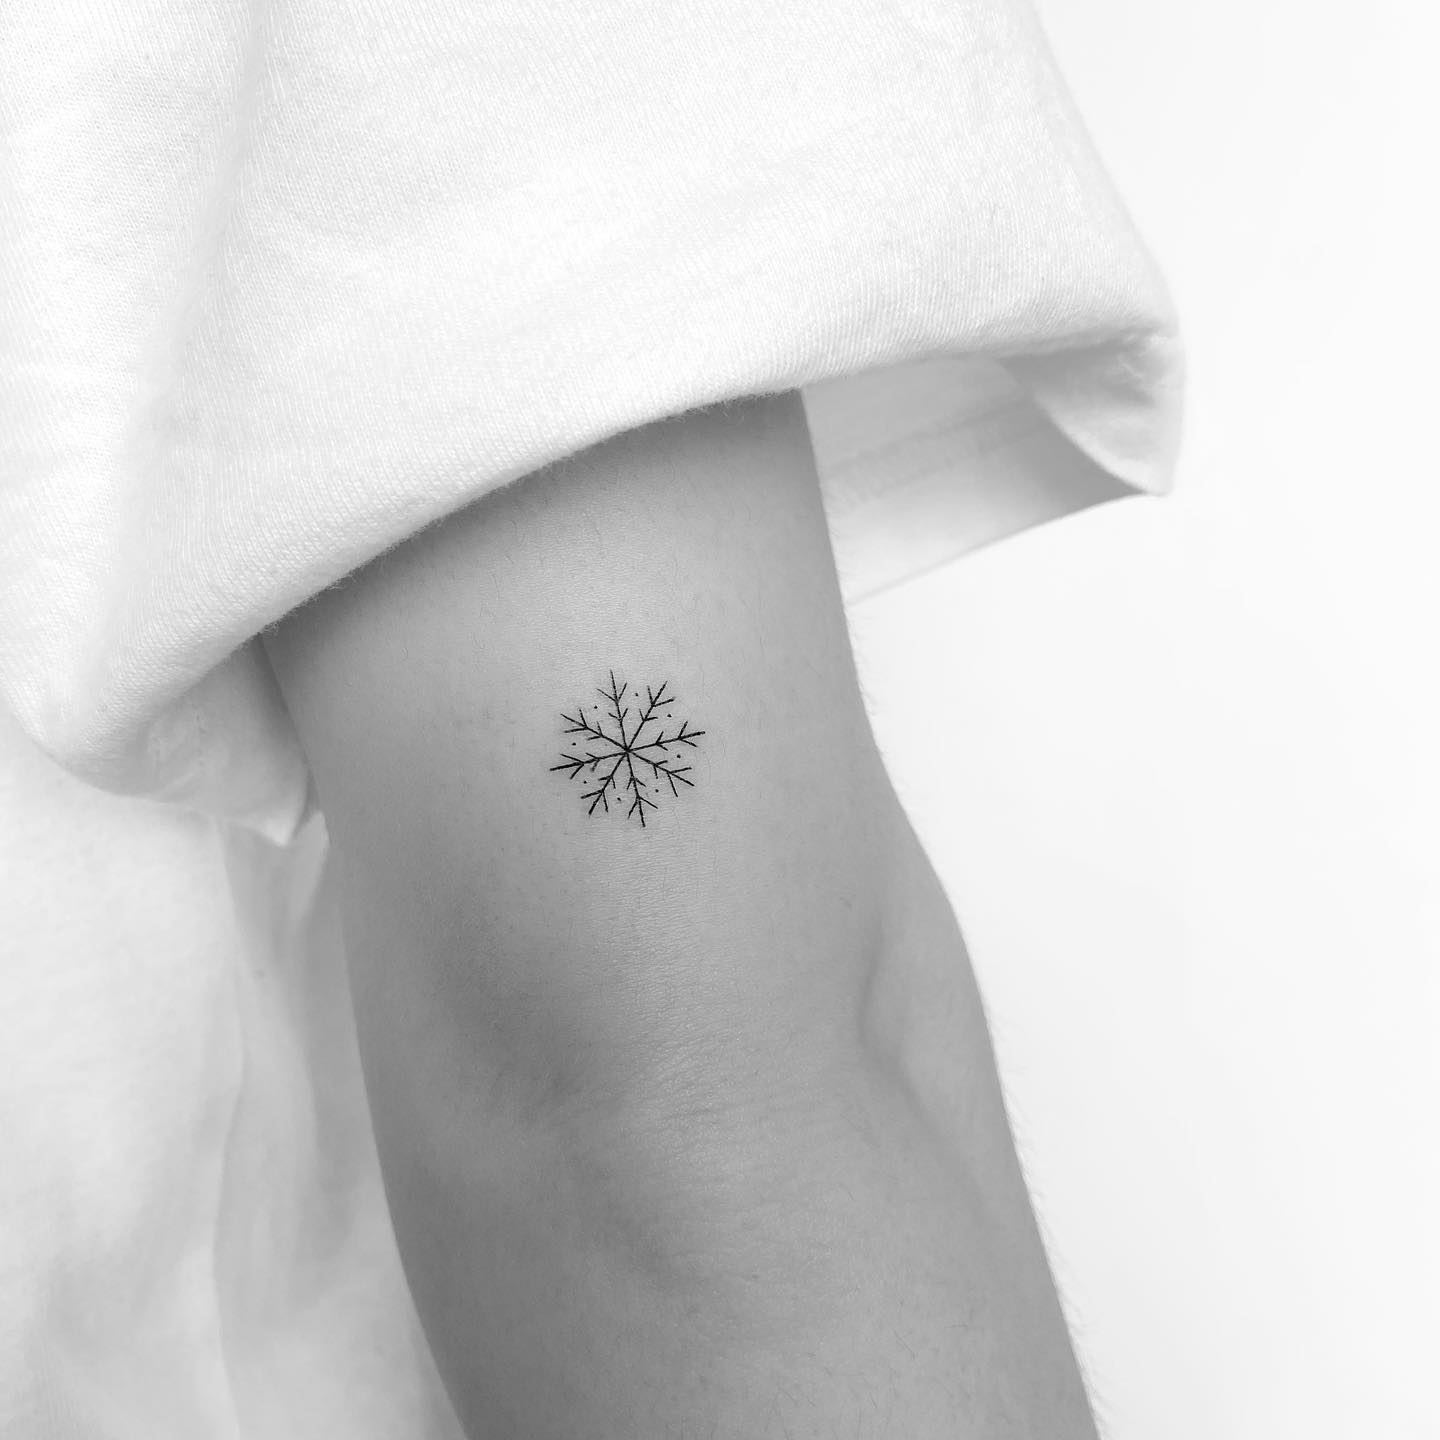 Snowflake tattoo by mrs.tattoo